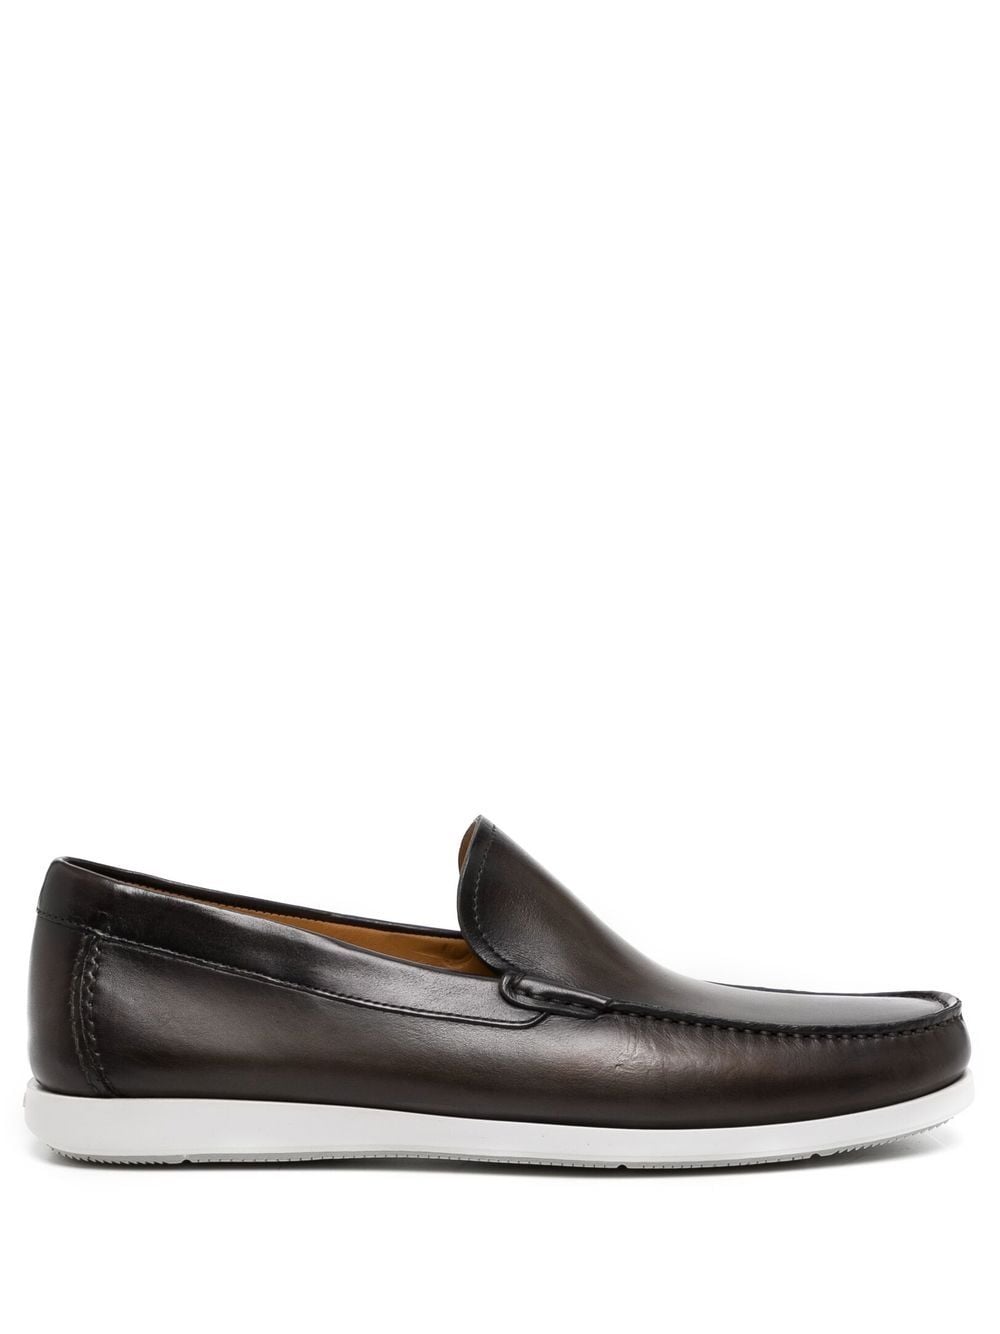 Magnanni leather slip-on loafers - Brown von Magnanni